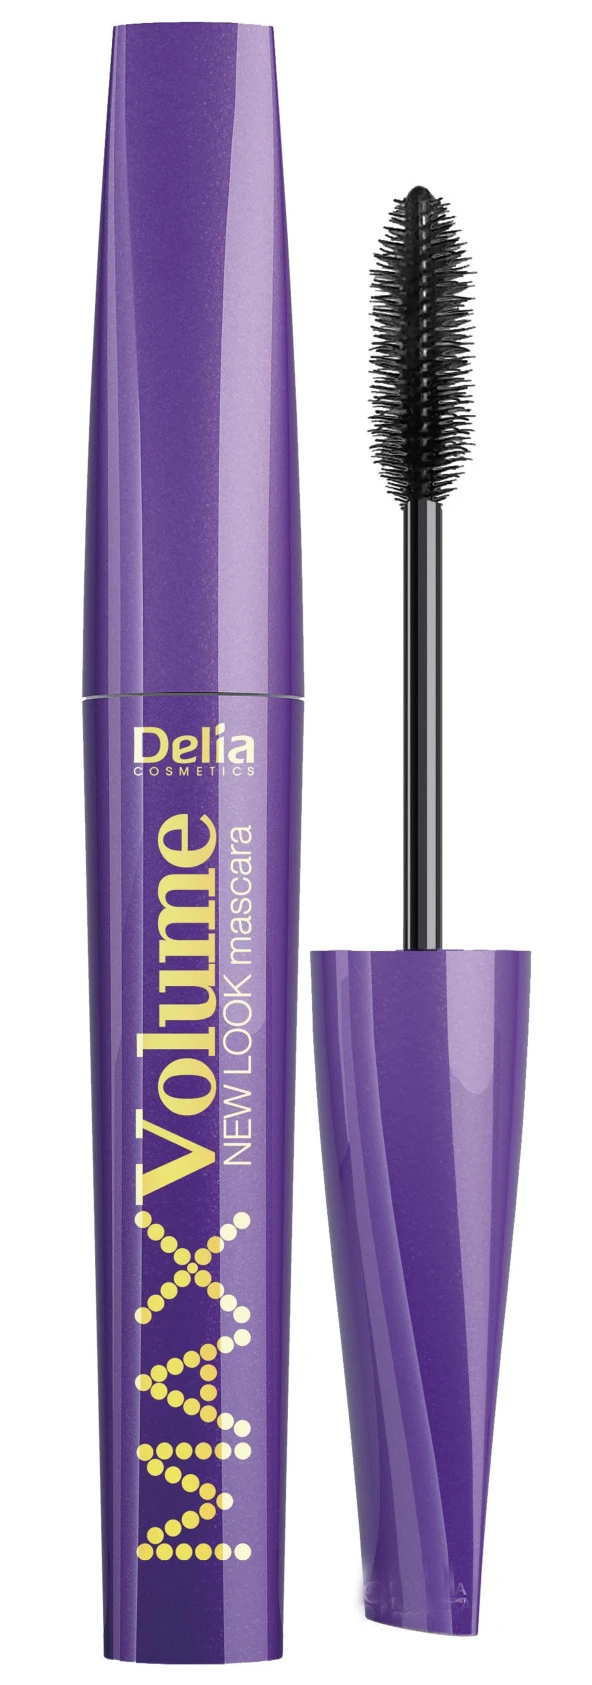 Delia Maskara Doğal Görünümlü Uzun ve Max Volume New Look Suya Dayanıklı Siyah Mascara 12 ml Silikon